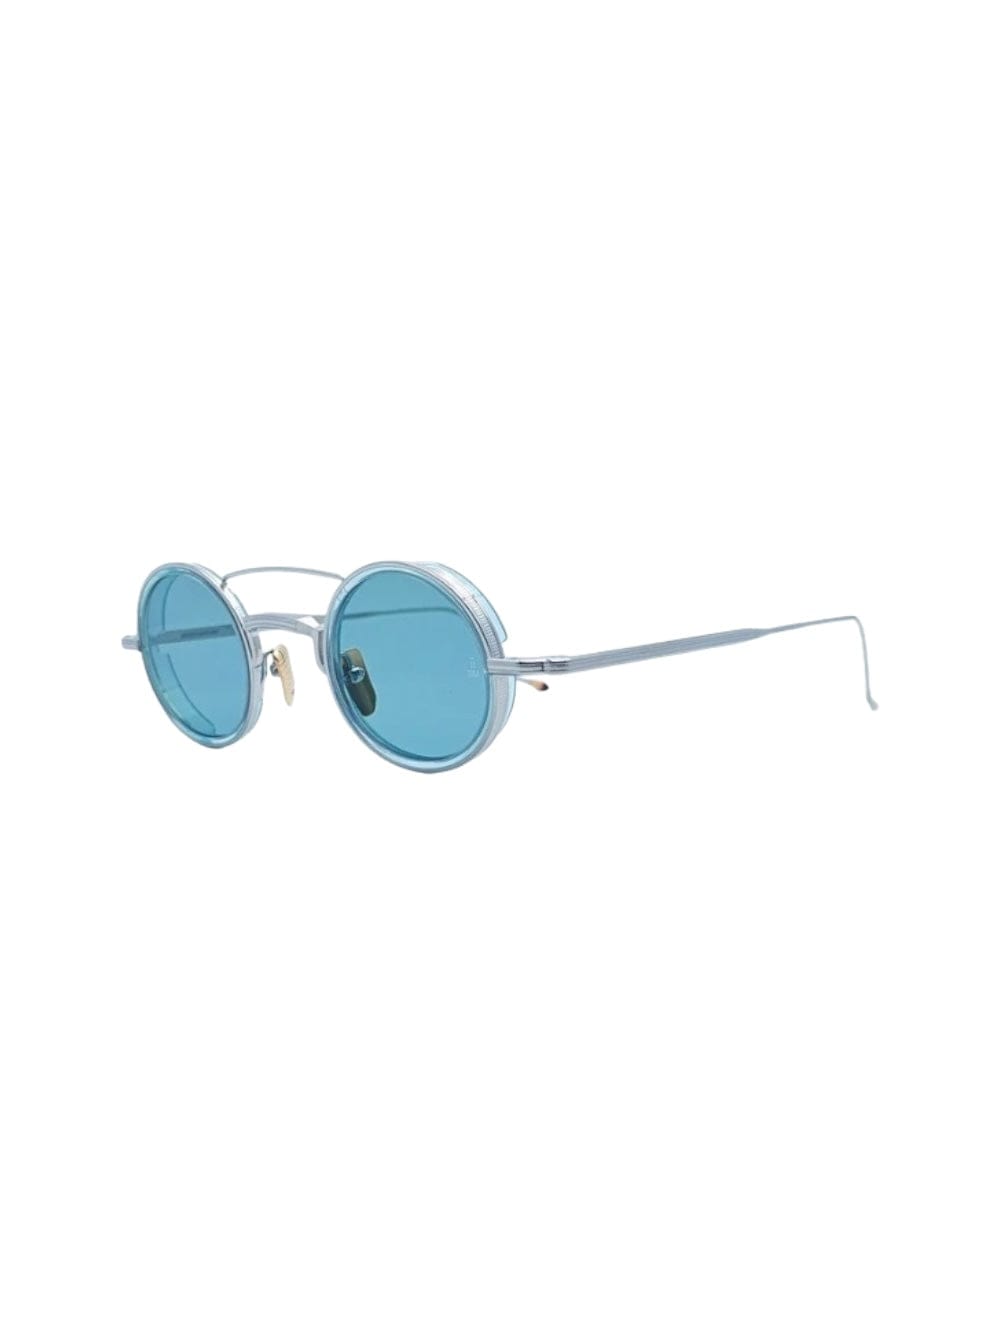 Jacques Marie Mage Ringo Sunglasses In Metallic